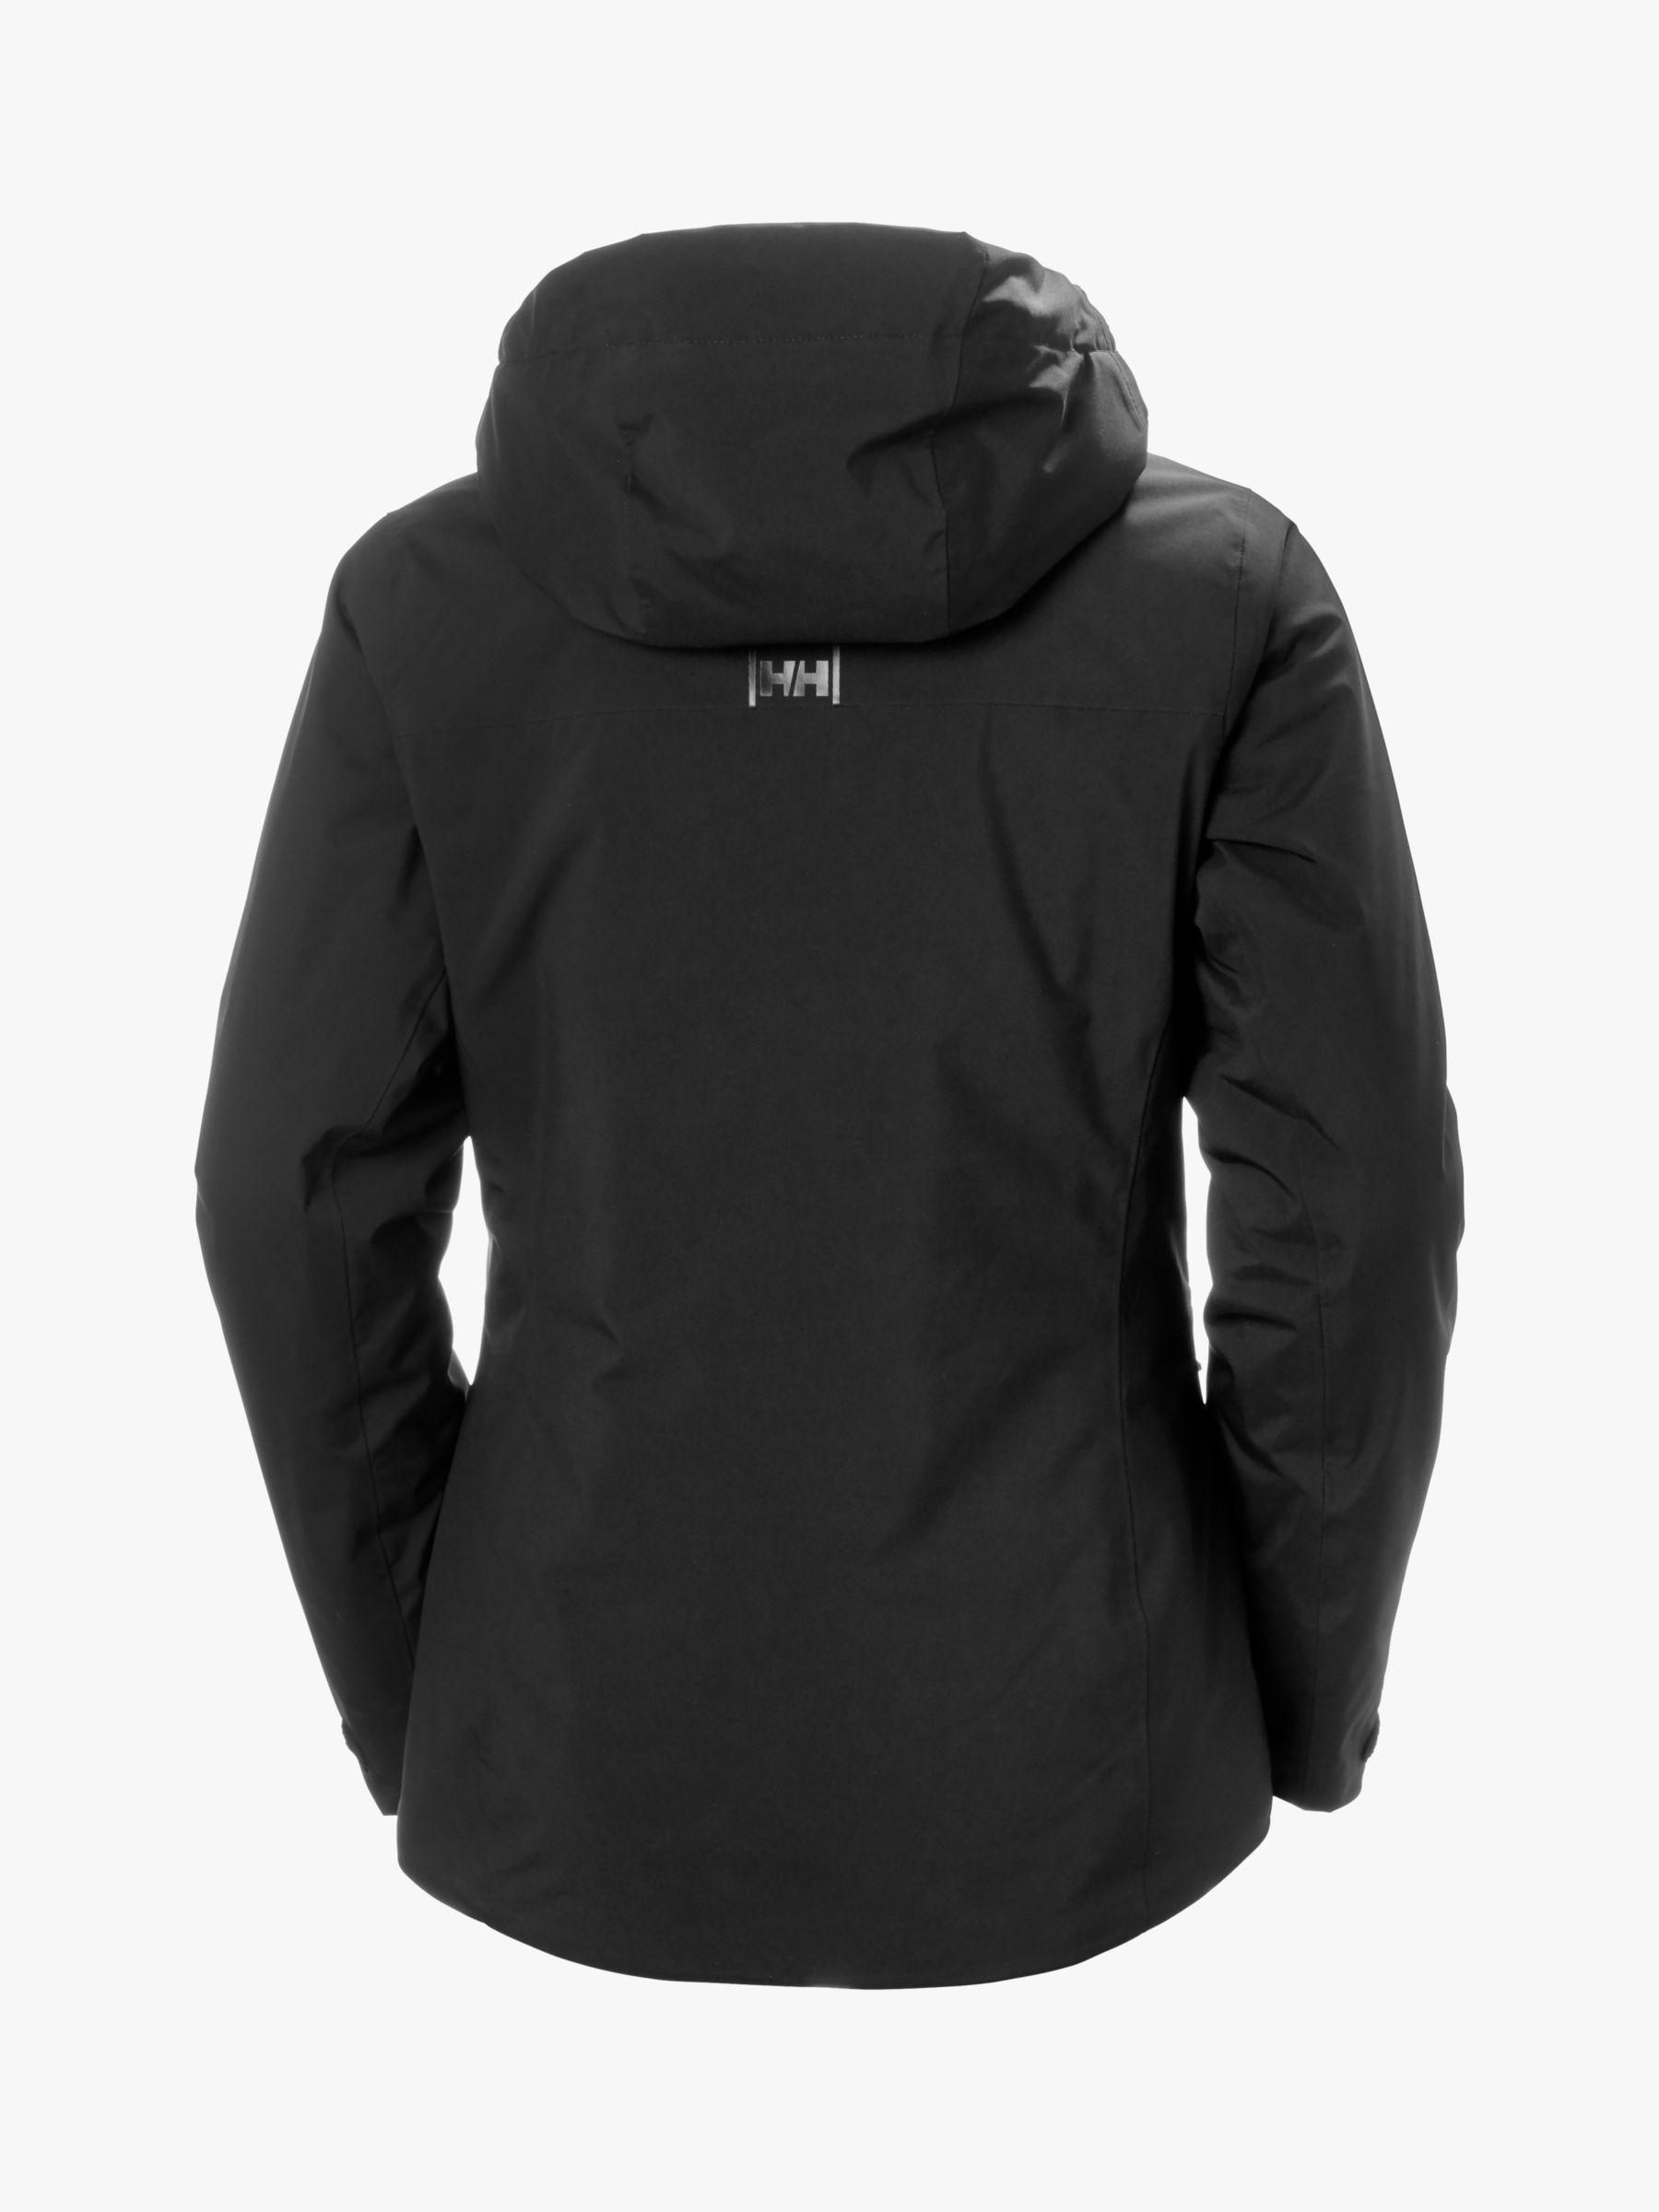 Buy Helly Hansen Snowplay Waterproof Ski Jacket, Black Online at johnlewis.com